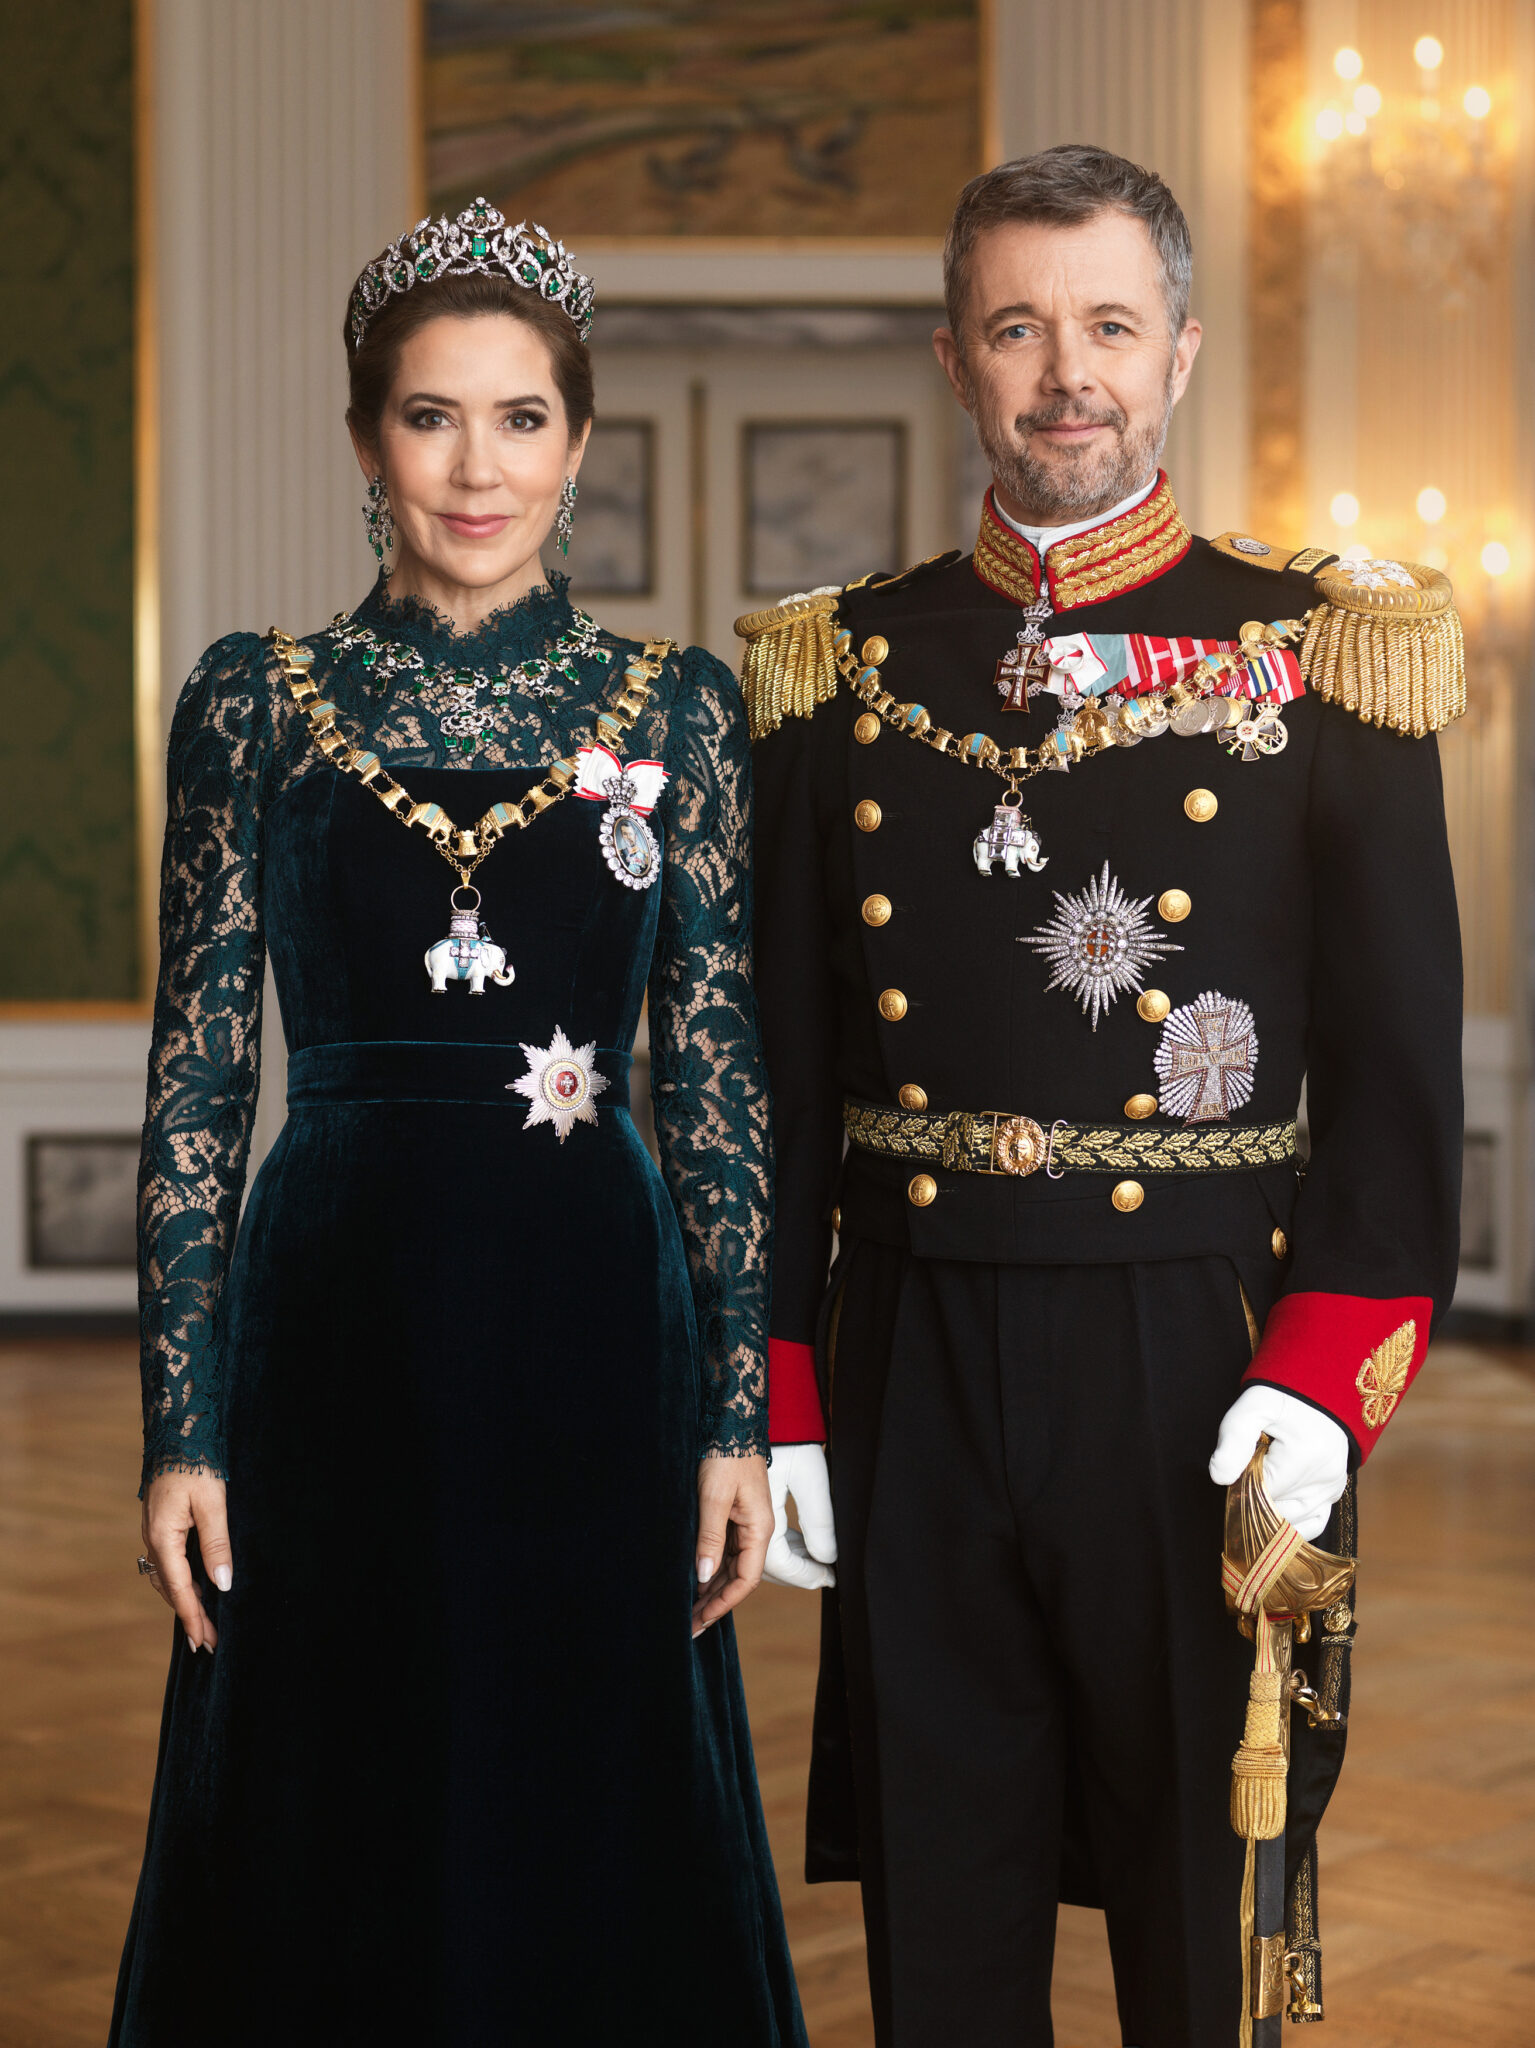 Federico X y Mary de Dinamarca ya tienen retratos oficiales (photo by Steen Evald:Kongehuset)